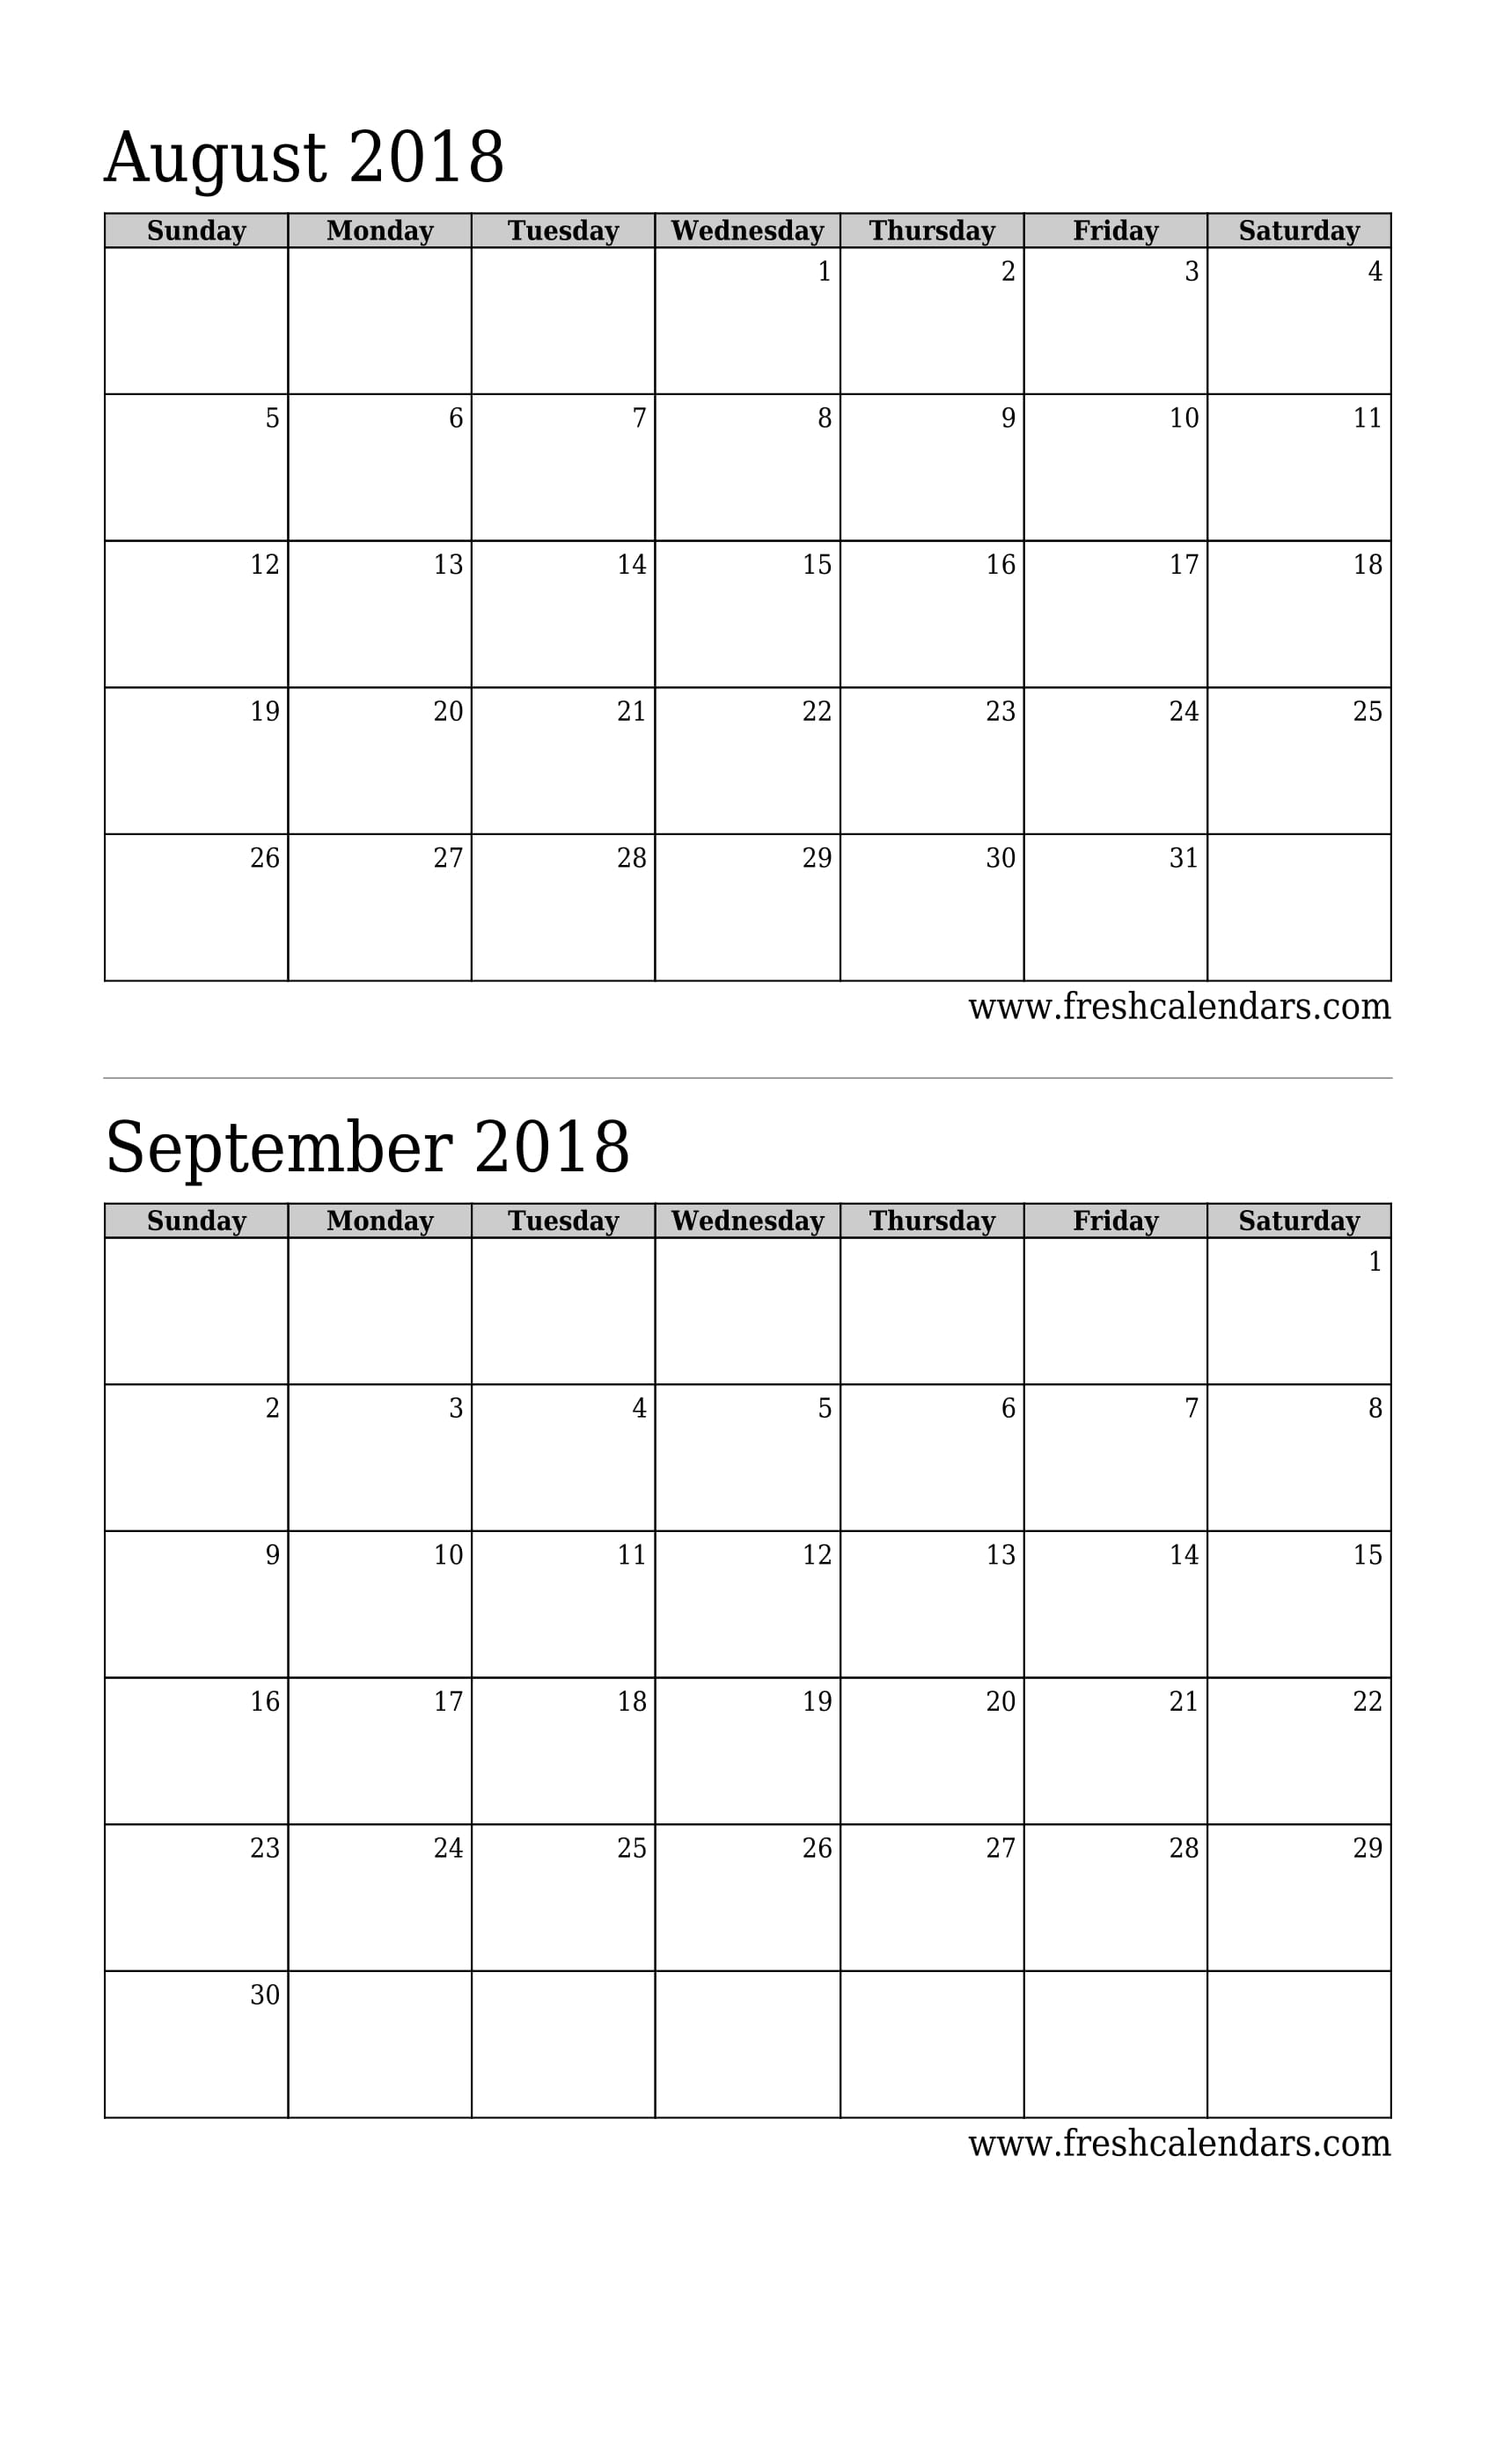 August 2018 Calendar 2 Months Calendar (Basic)